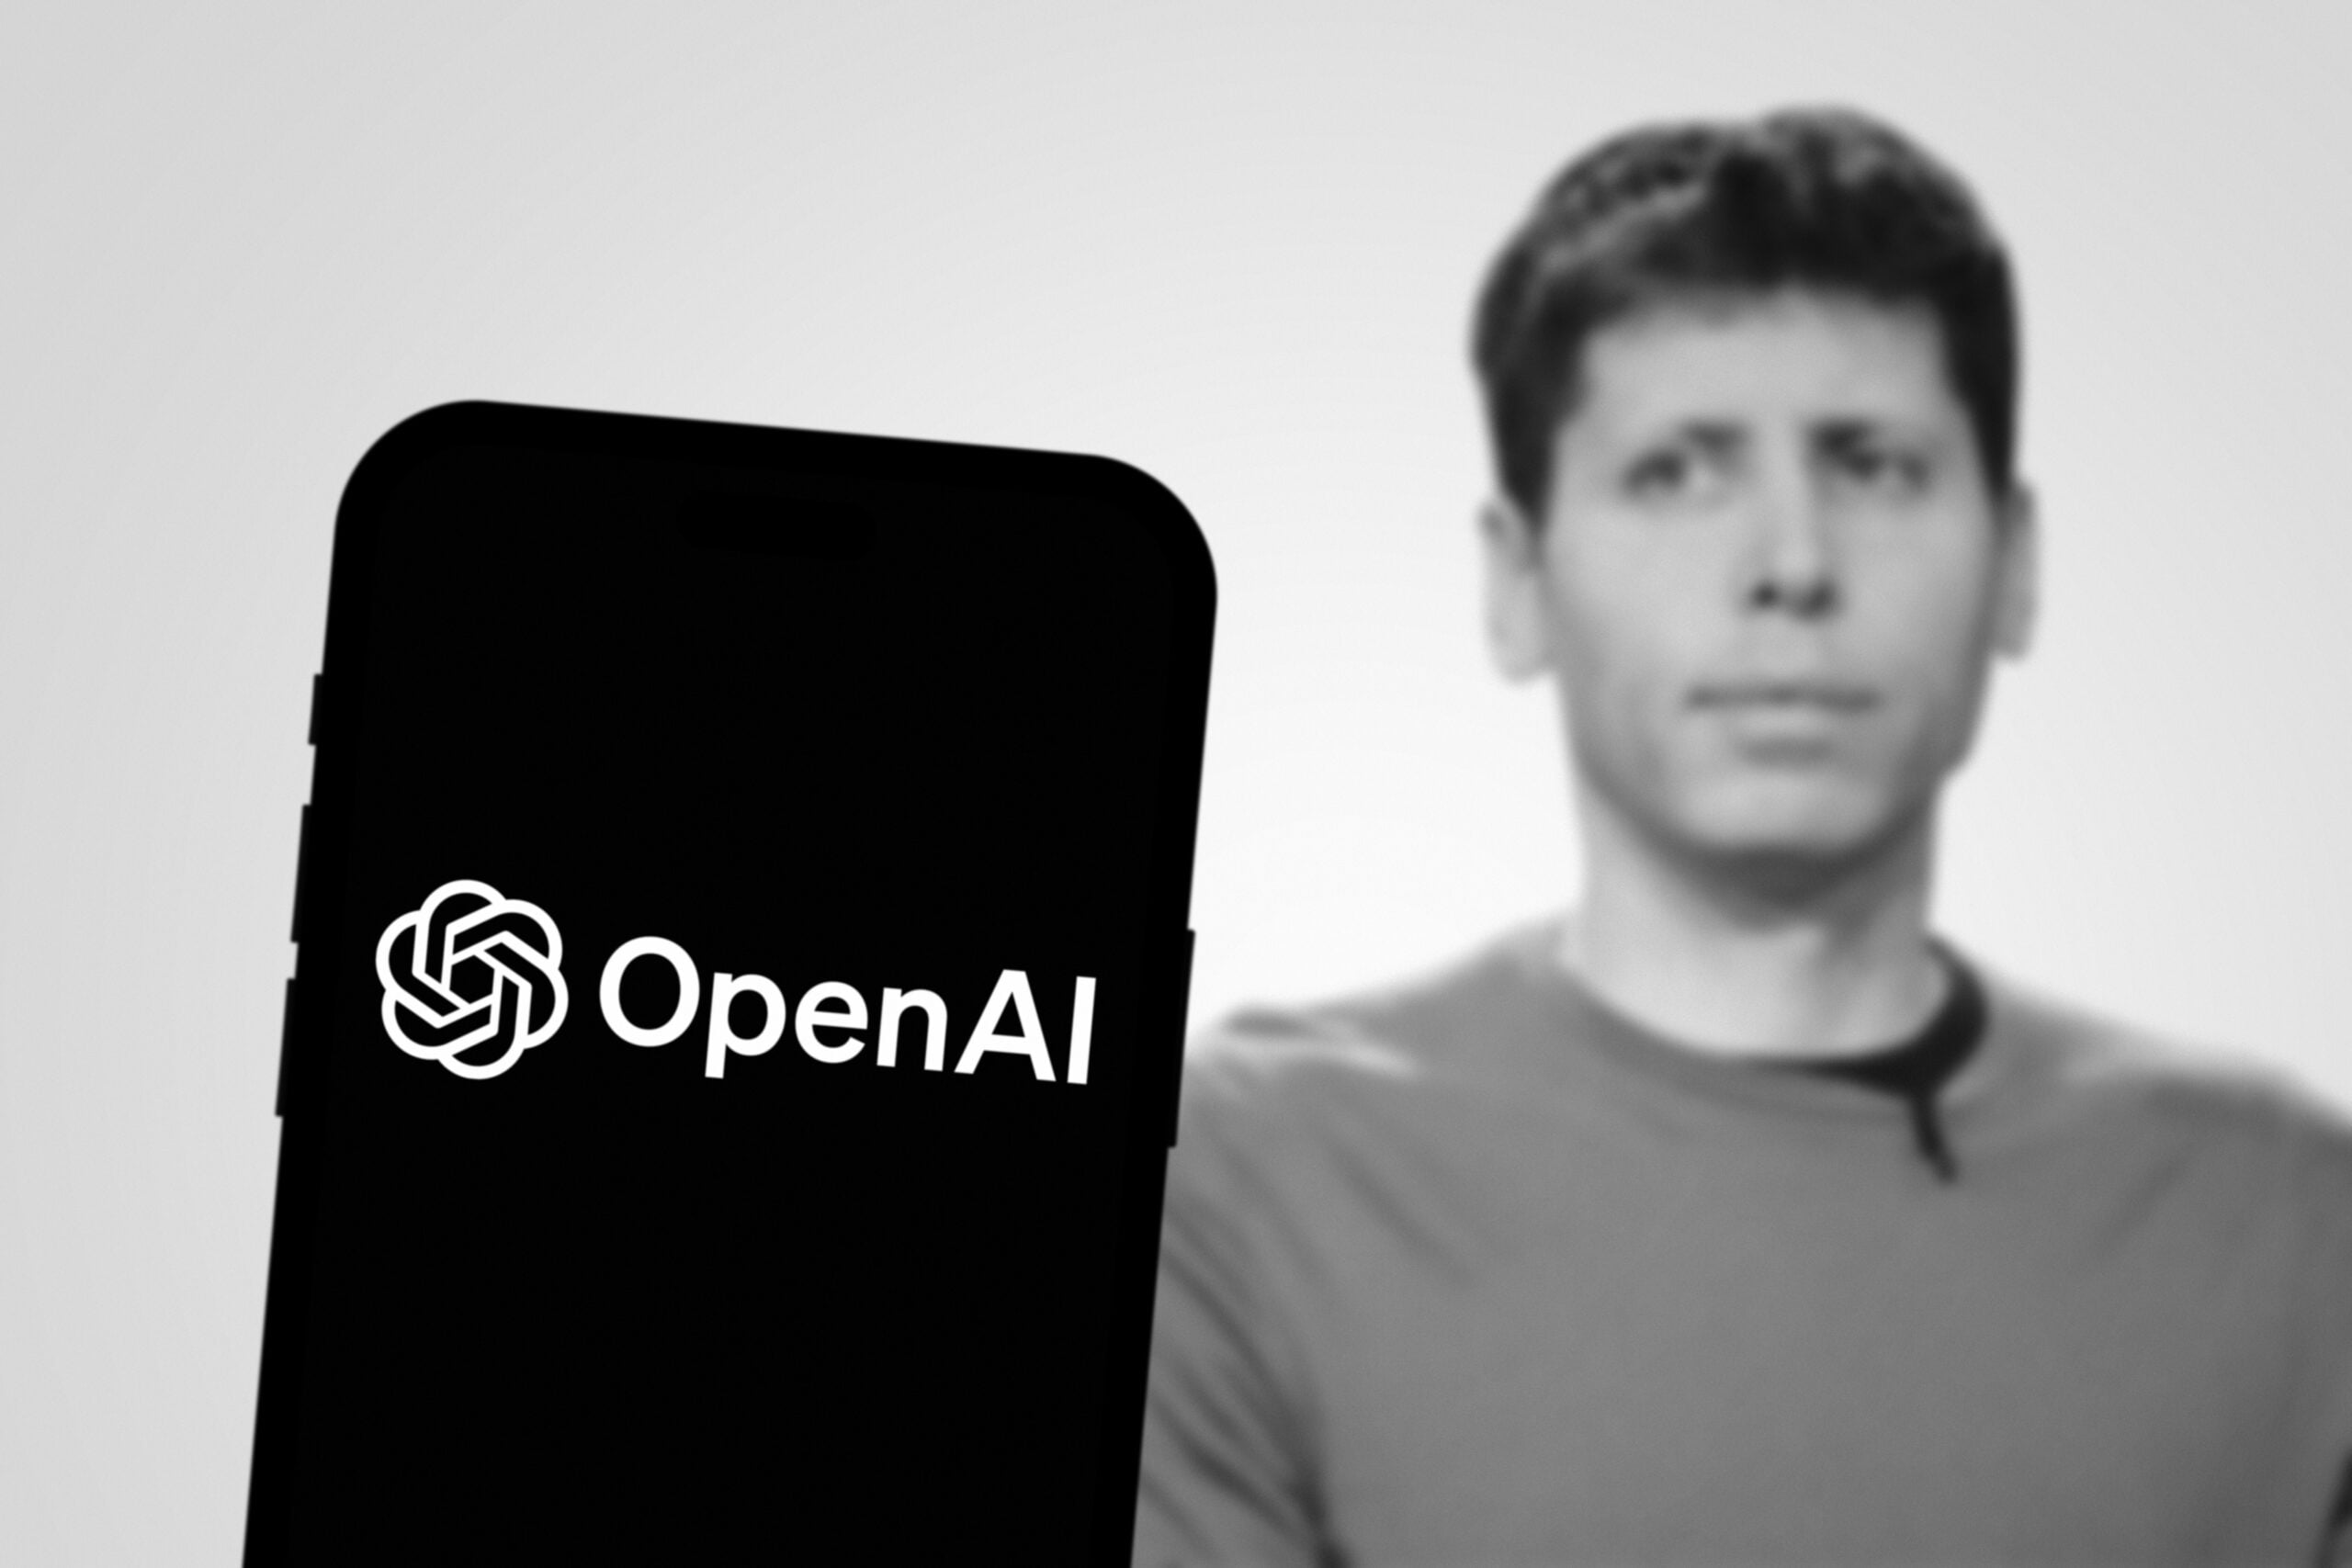 Logo OpenAI na ekranie telefonu komórkowego, w tle niewyraźny wizerunek mężczyzny.